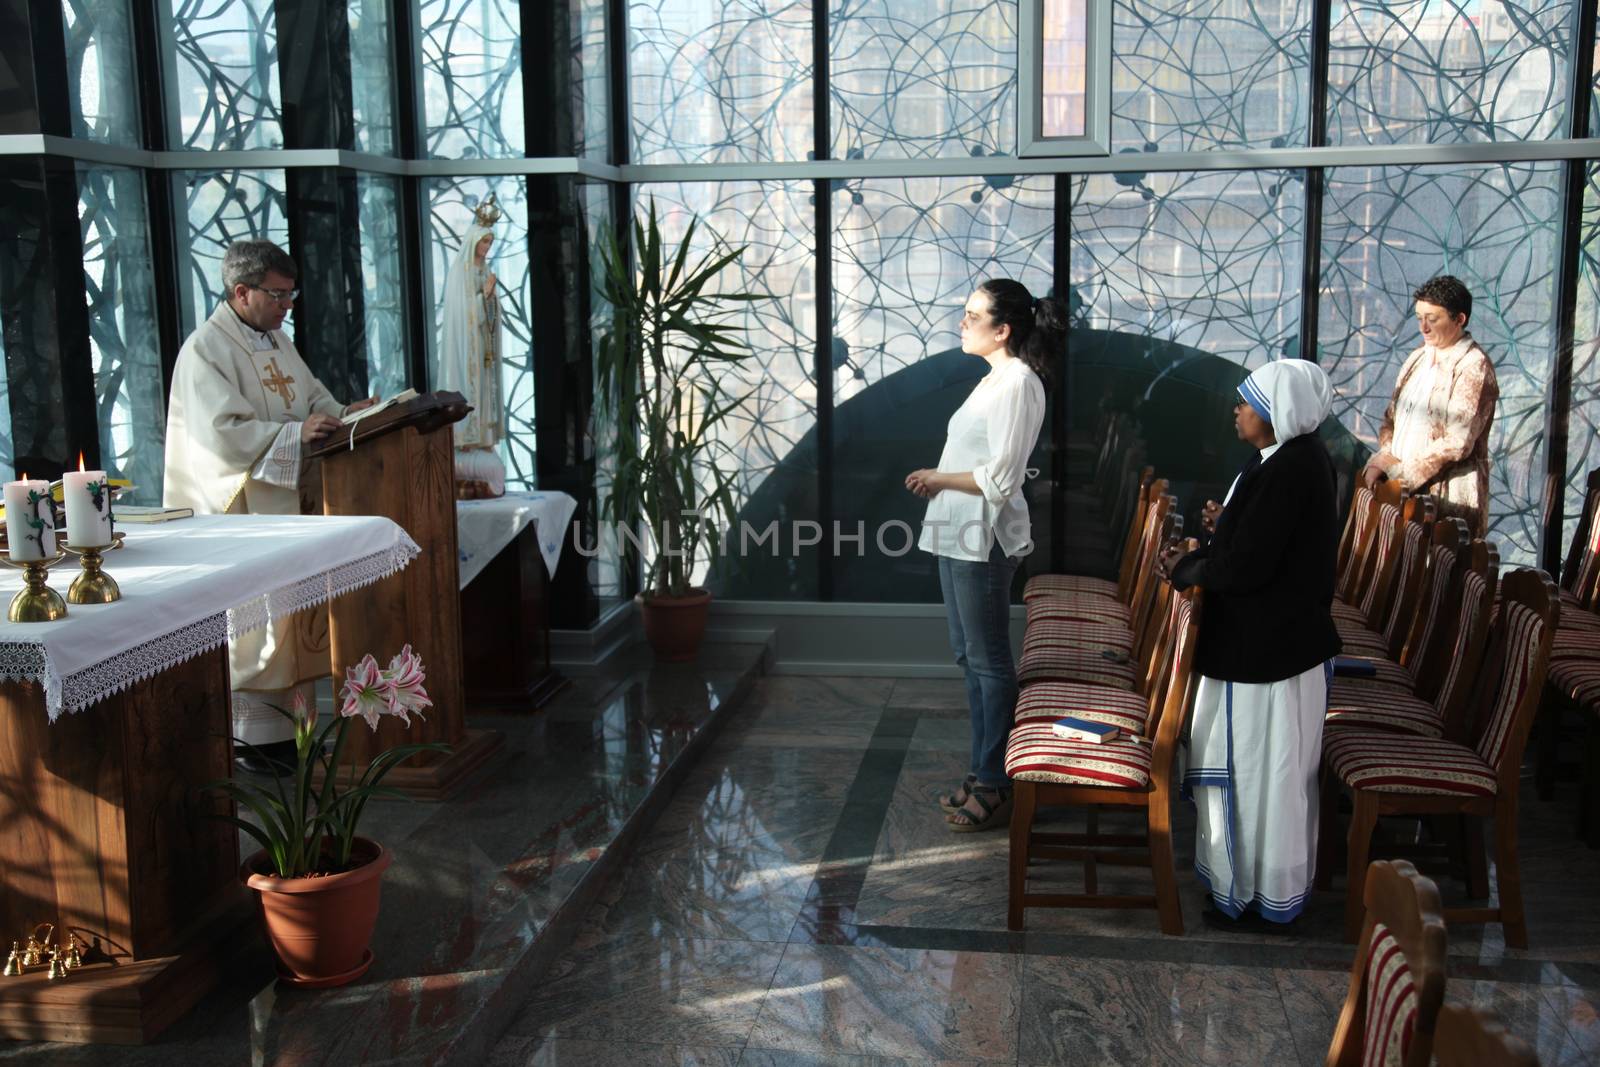 Mass in Chapel in Mother Teresa Memorial House in Skopje, Macedonia